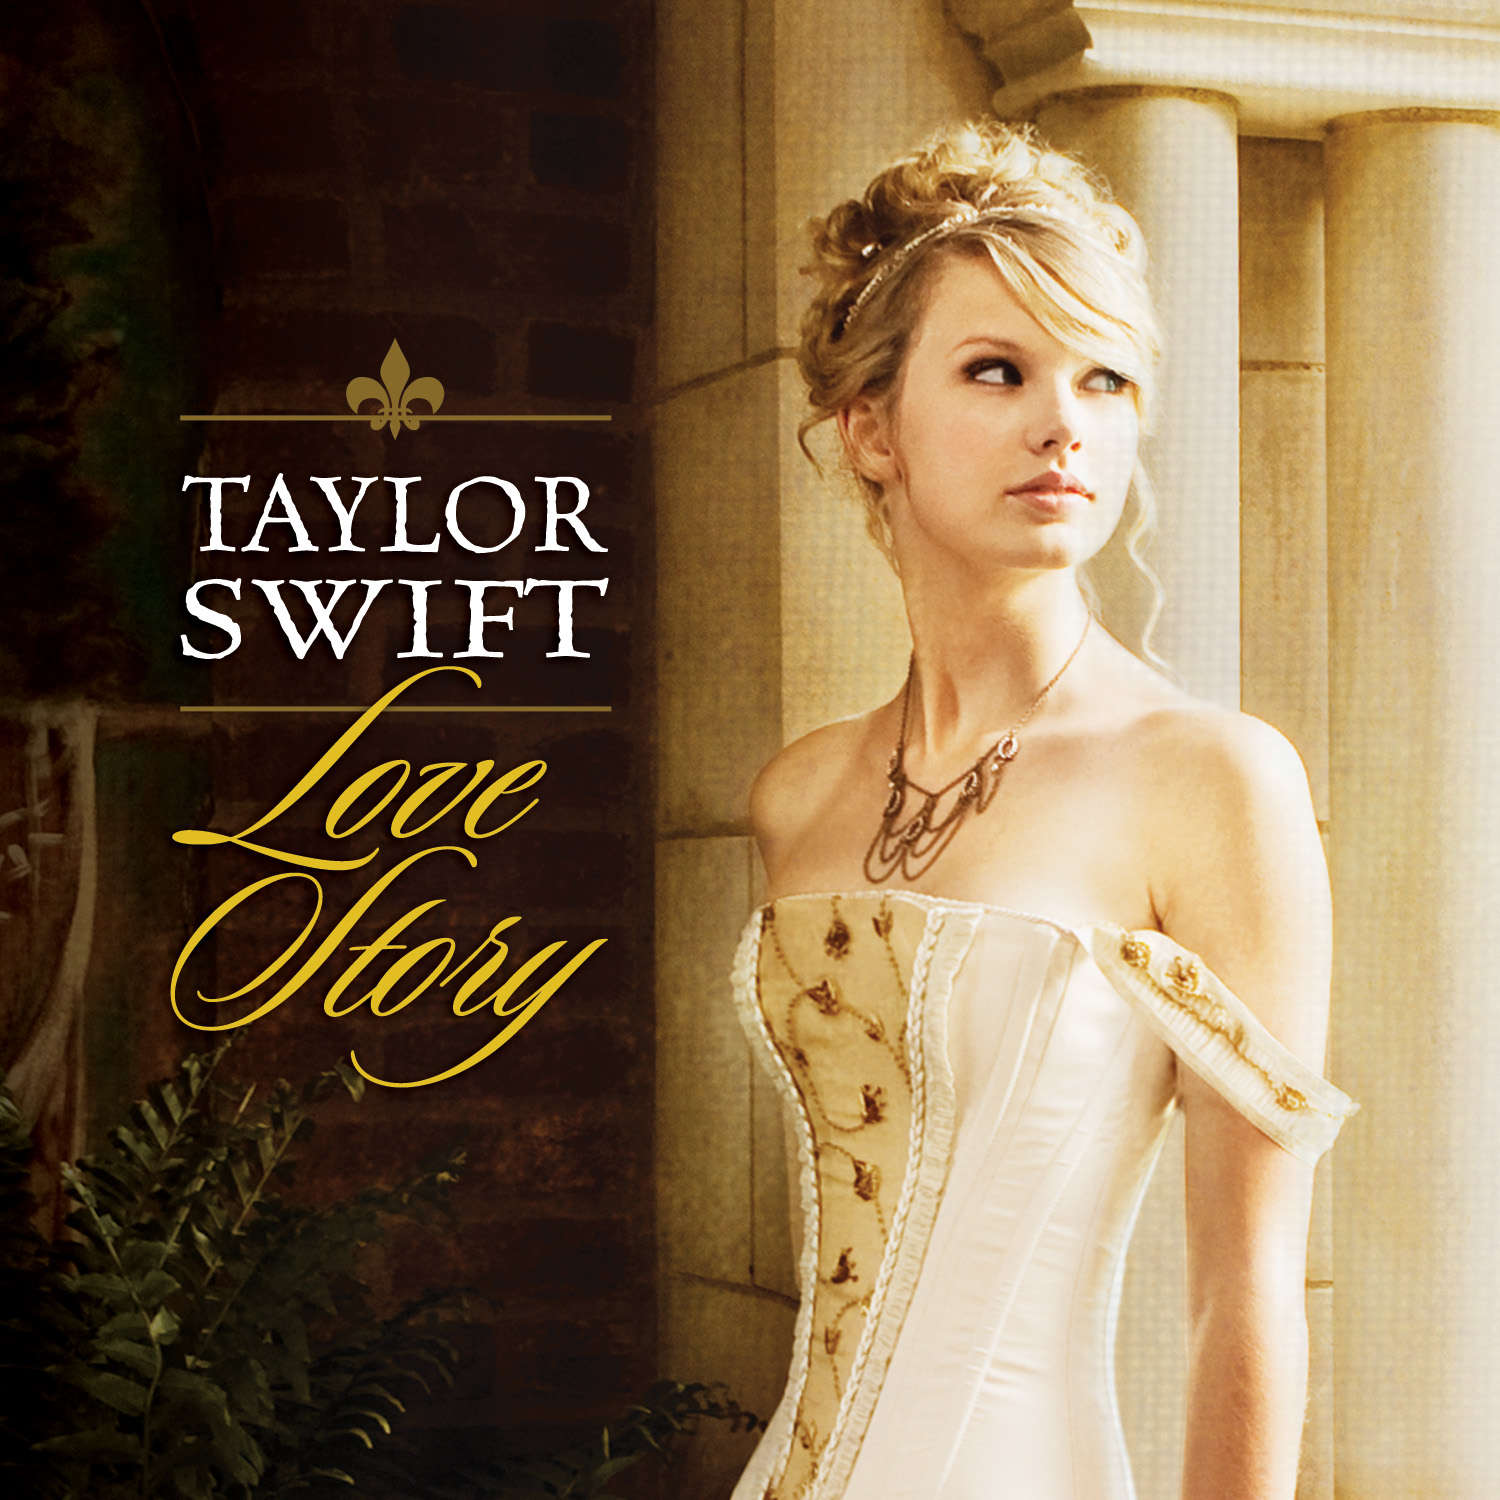 http://3.bp.blogspot.com/-JSpWOyMSxmE/USLW4ALXgzI/AAAAAAAAGy0/Jvzh594_2r4/s1600/Love+Story++Album+Taylor+Swift.jpeg